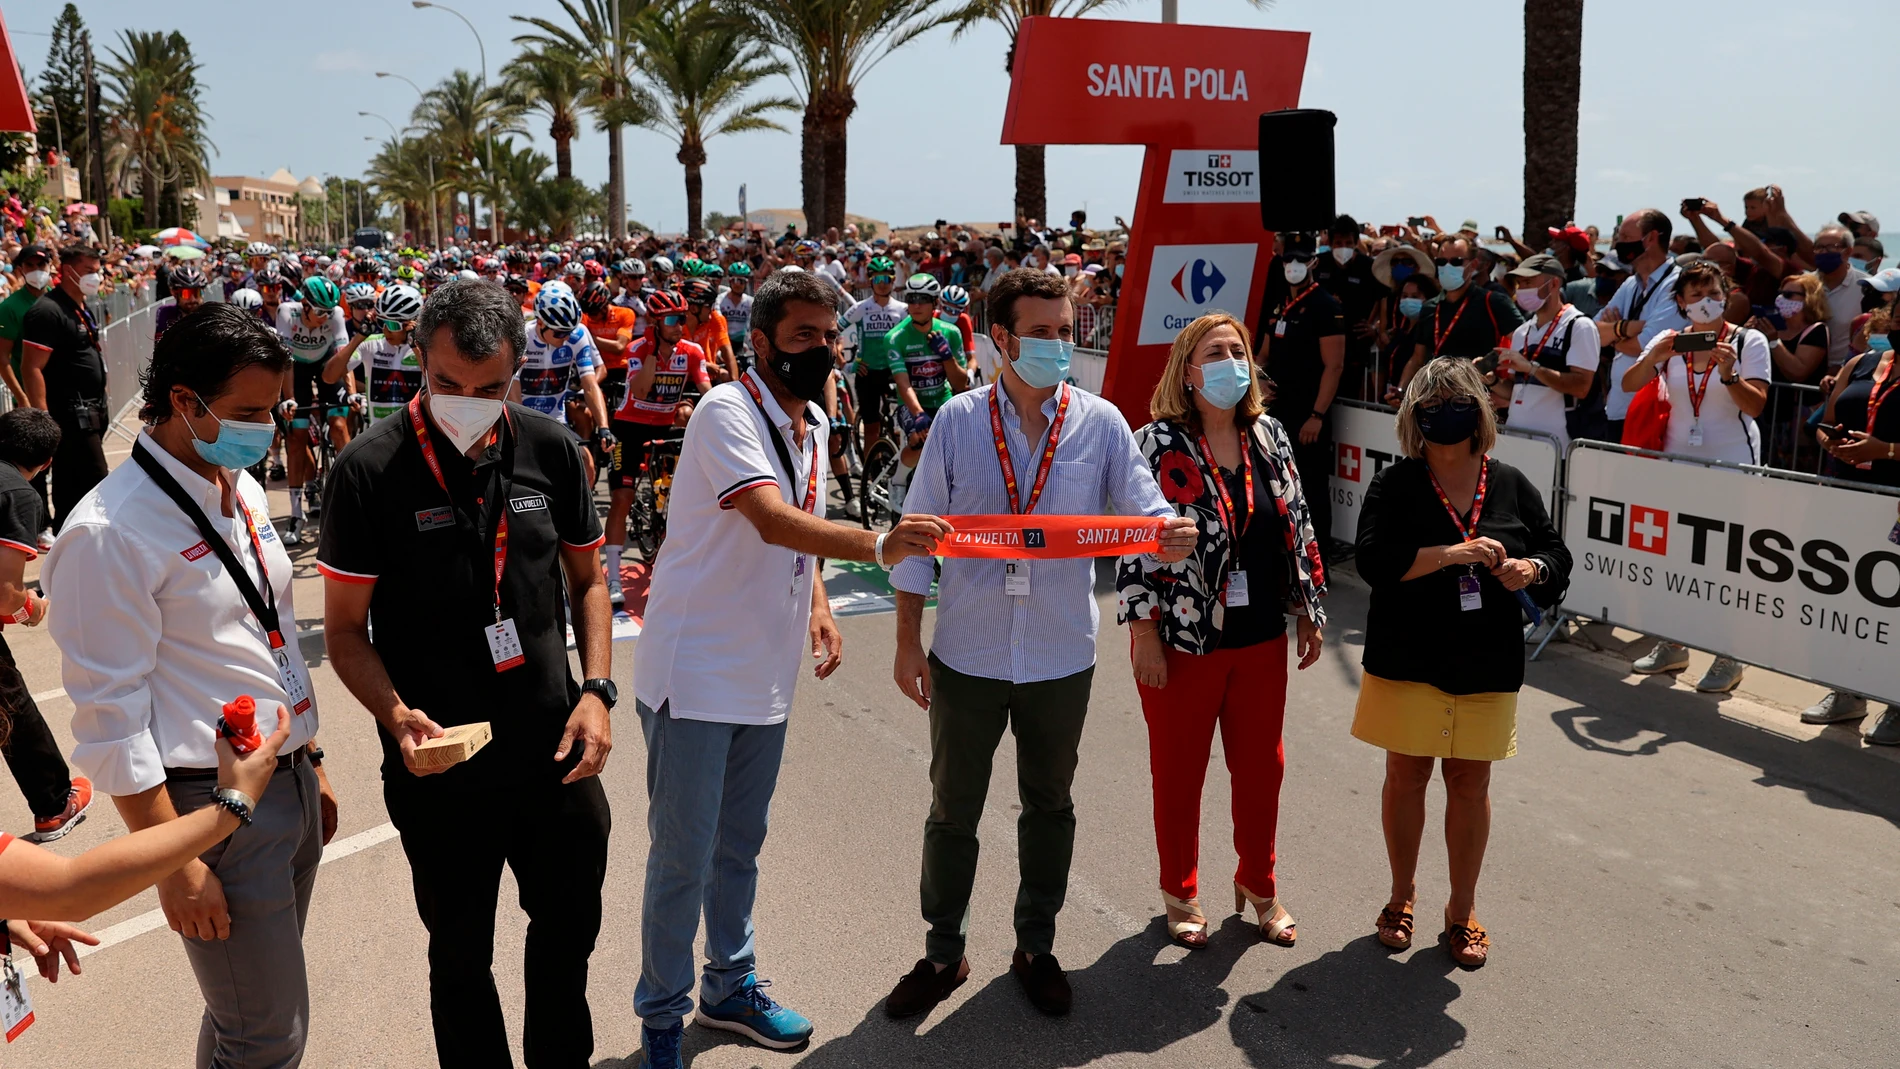 El líder del PP, Pablo Casado, en la salida de la octava etapa de La Vuelta a España que ha transcurrido entre Santa Pola y La Manga del Mar Menor, con 173,7 km. de recorrido